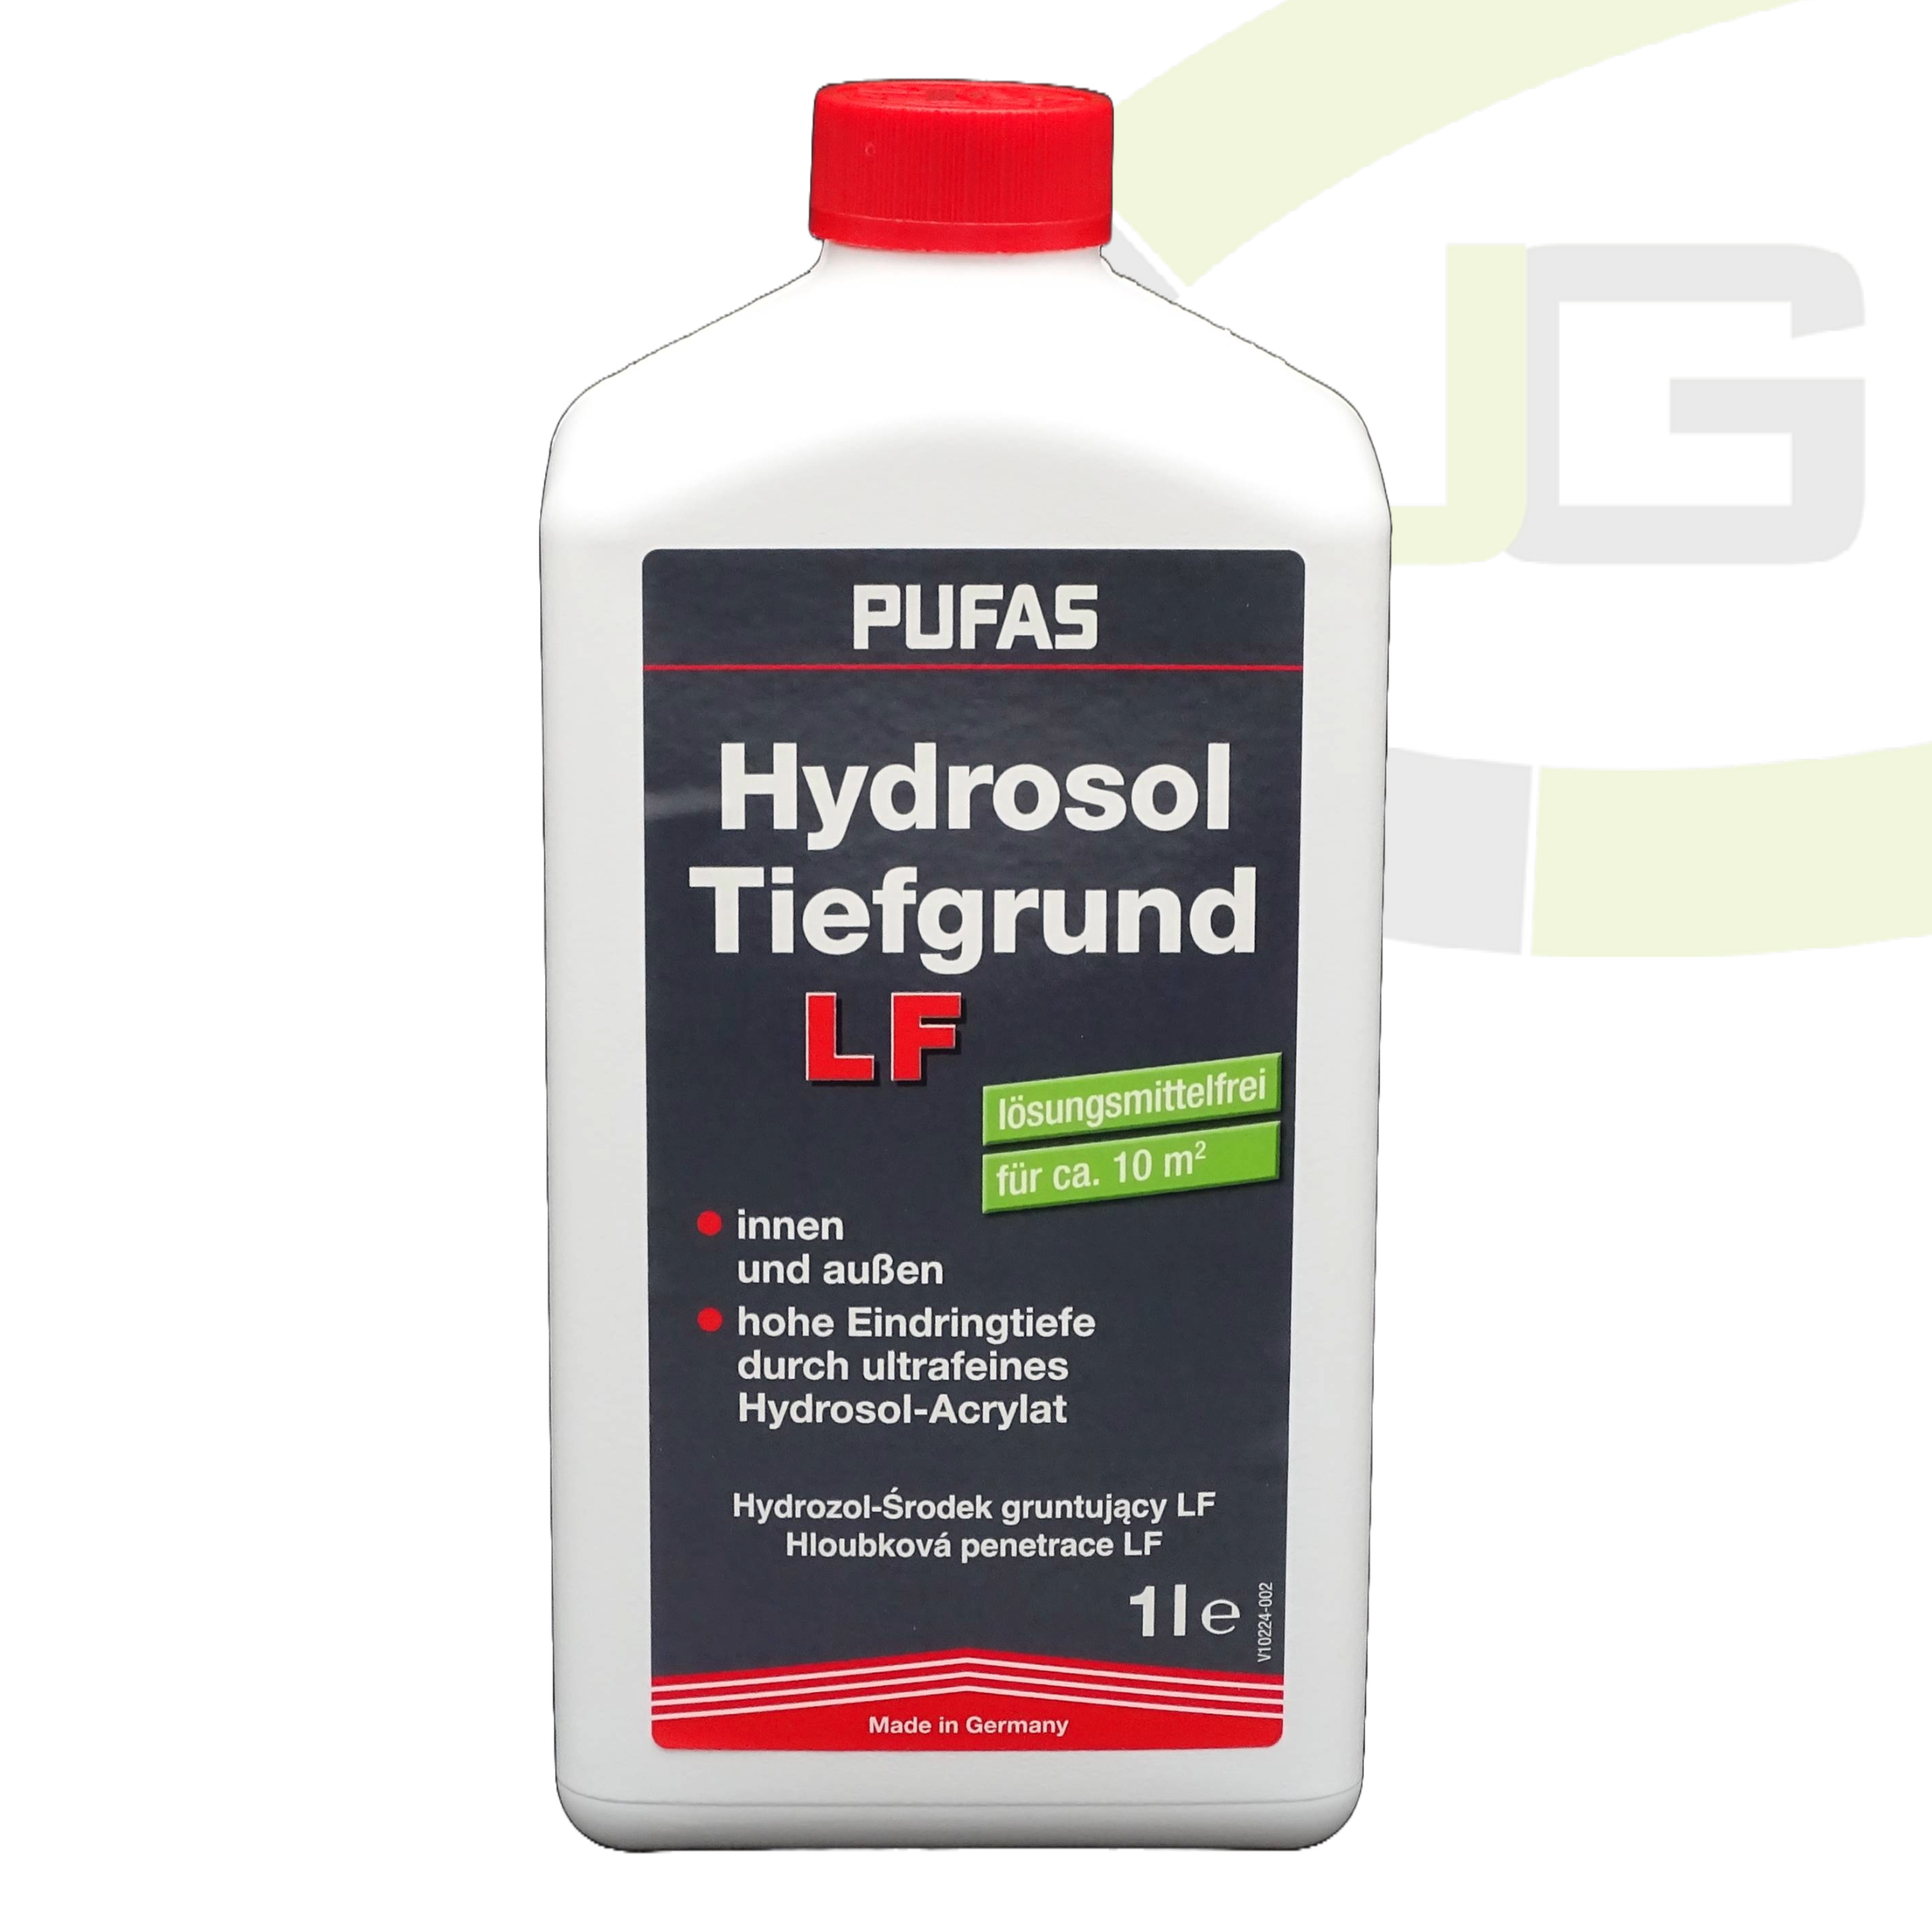 Pufas Hydrosol Tiefgrund LF / Grundierung